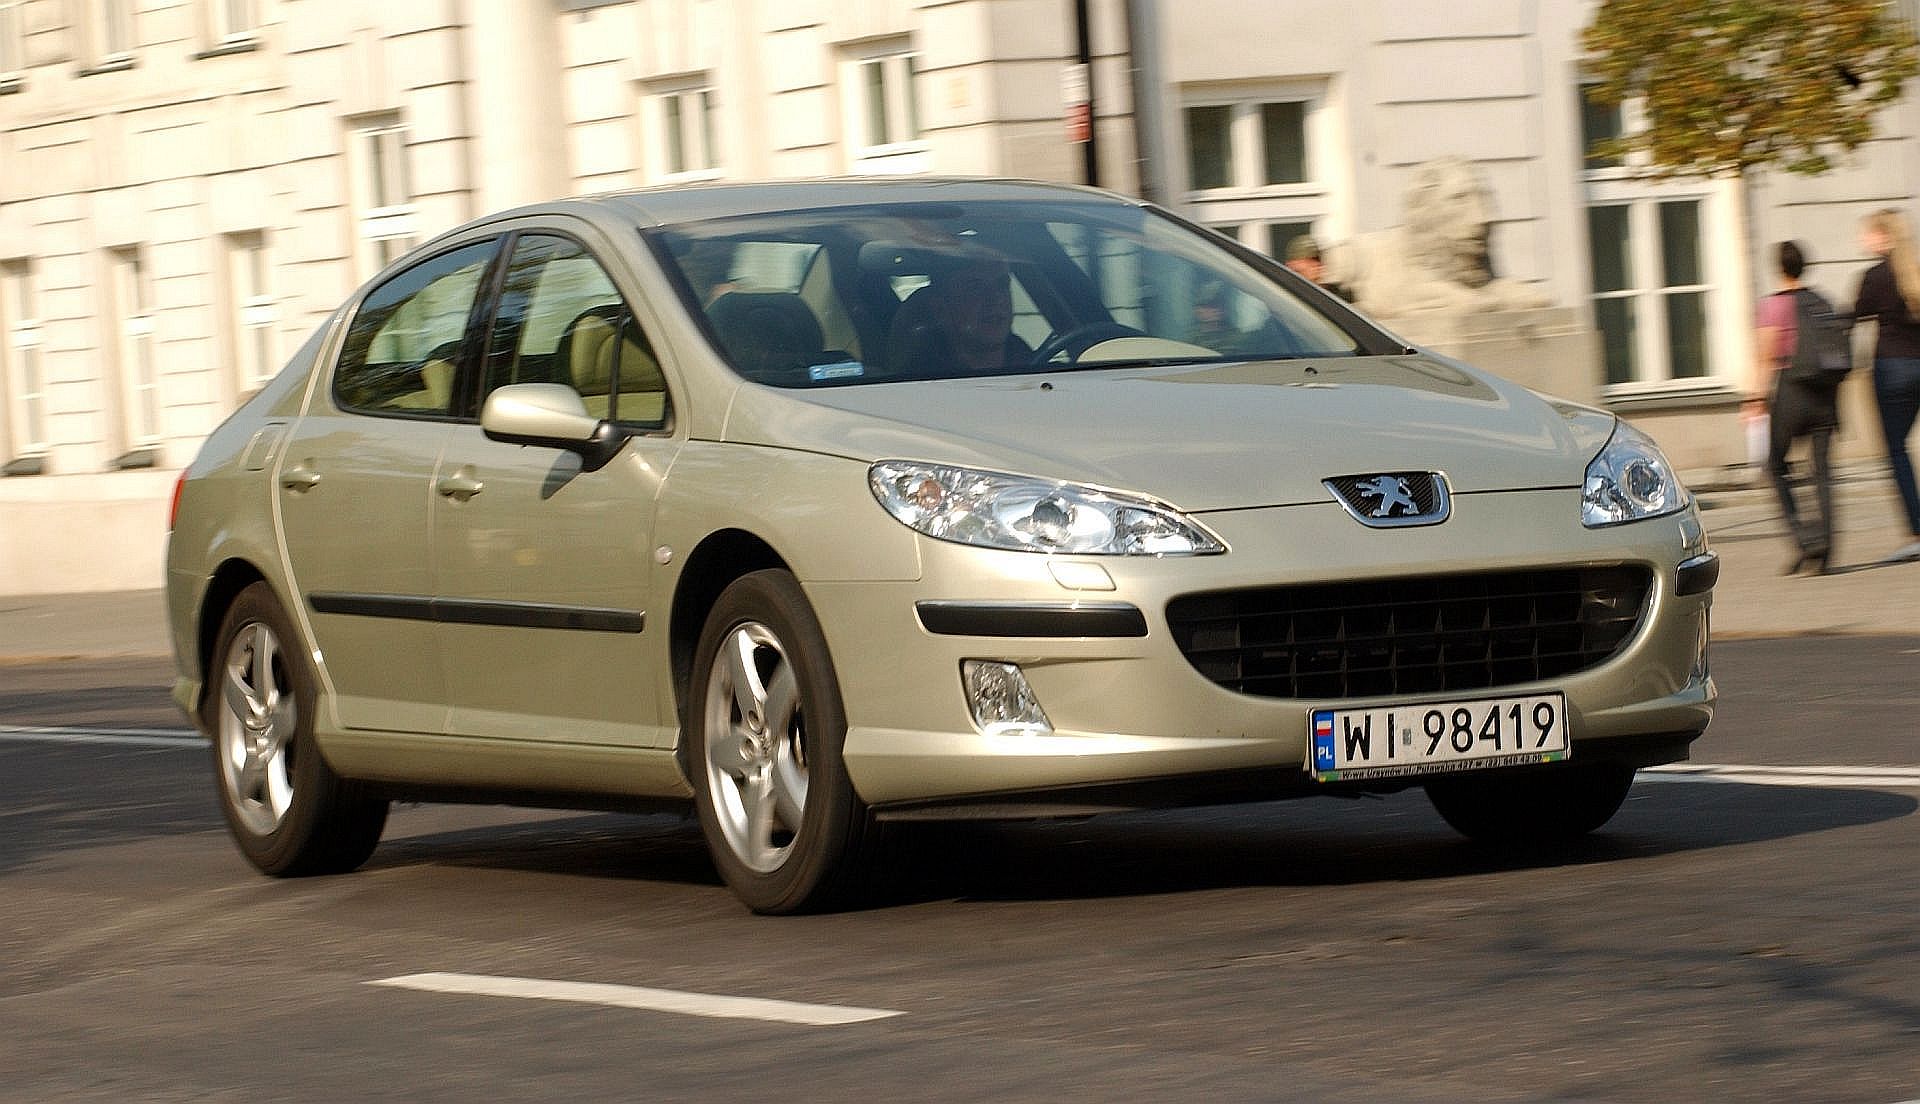 Transplant law Chap Używany Peugeot 407 (2004-2010) - opinie, dane techniczne, usterki